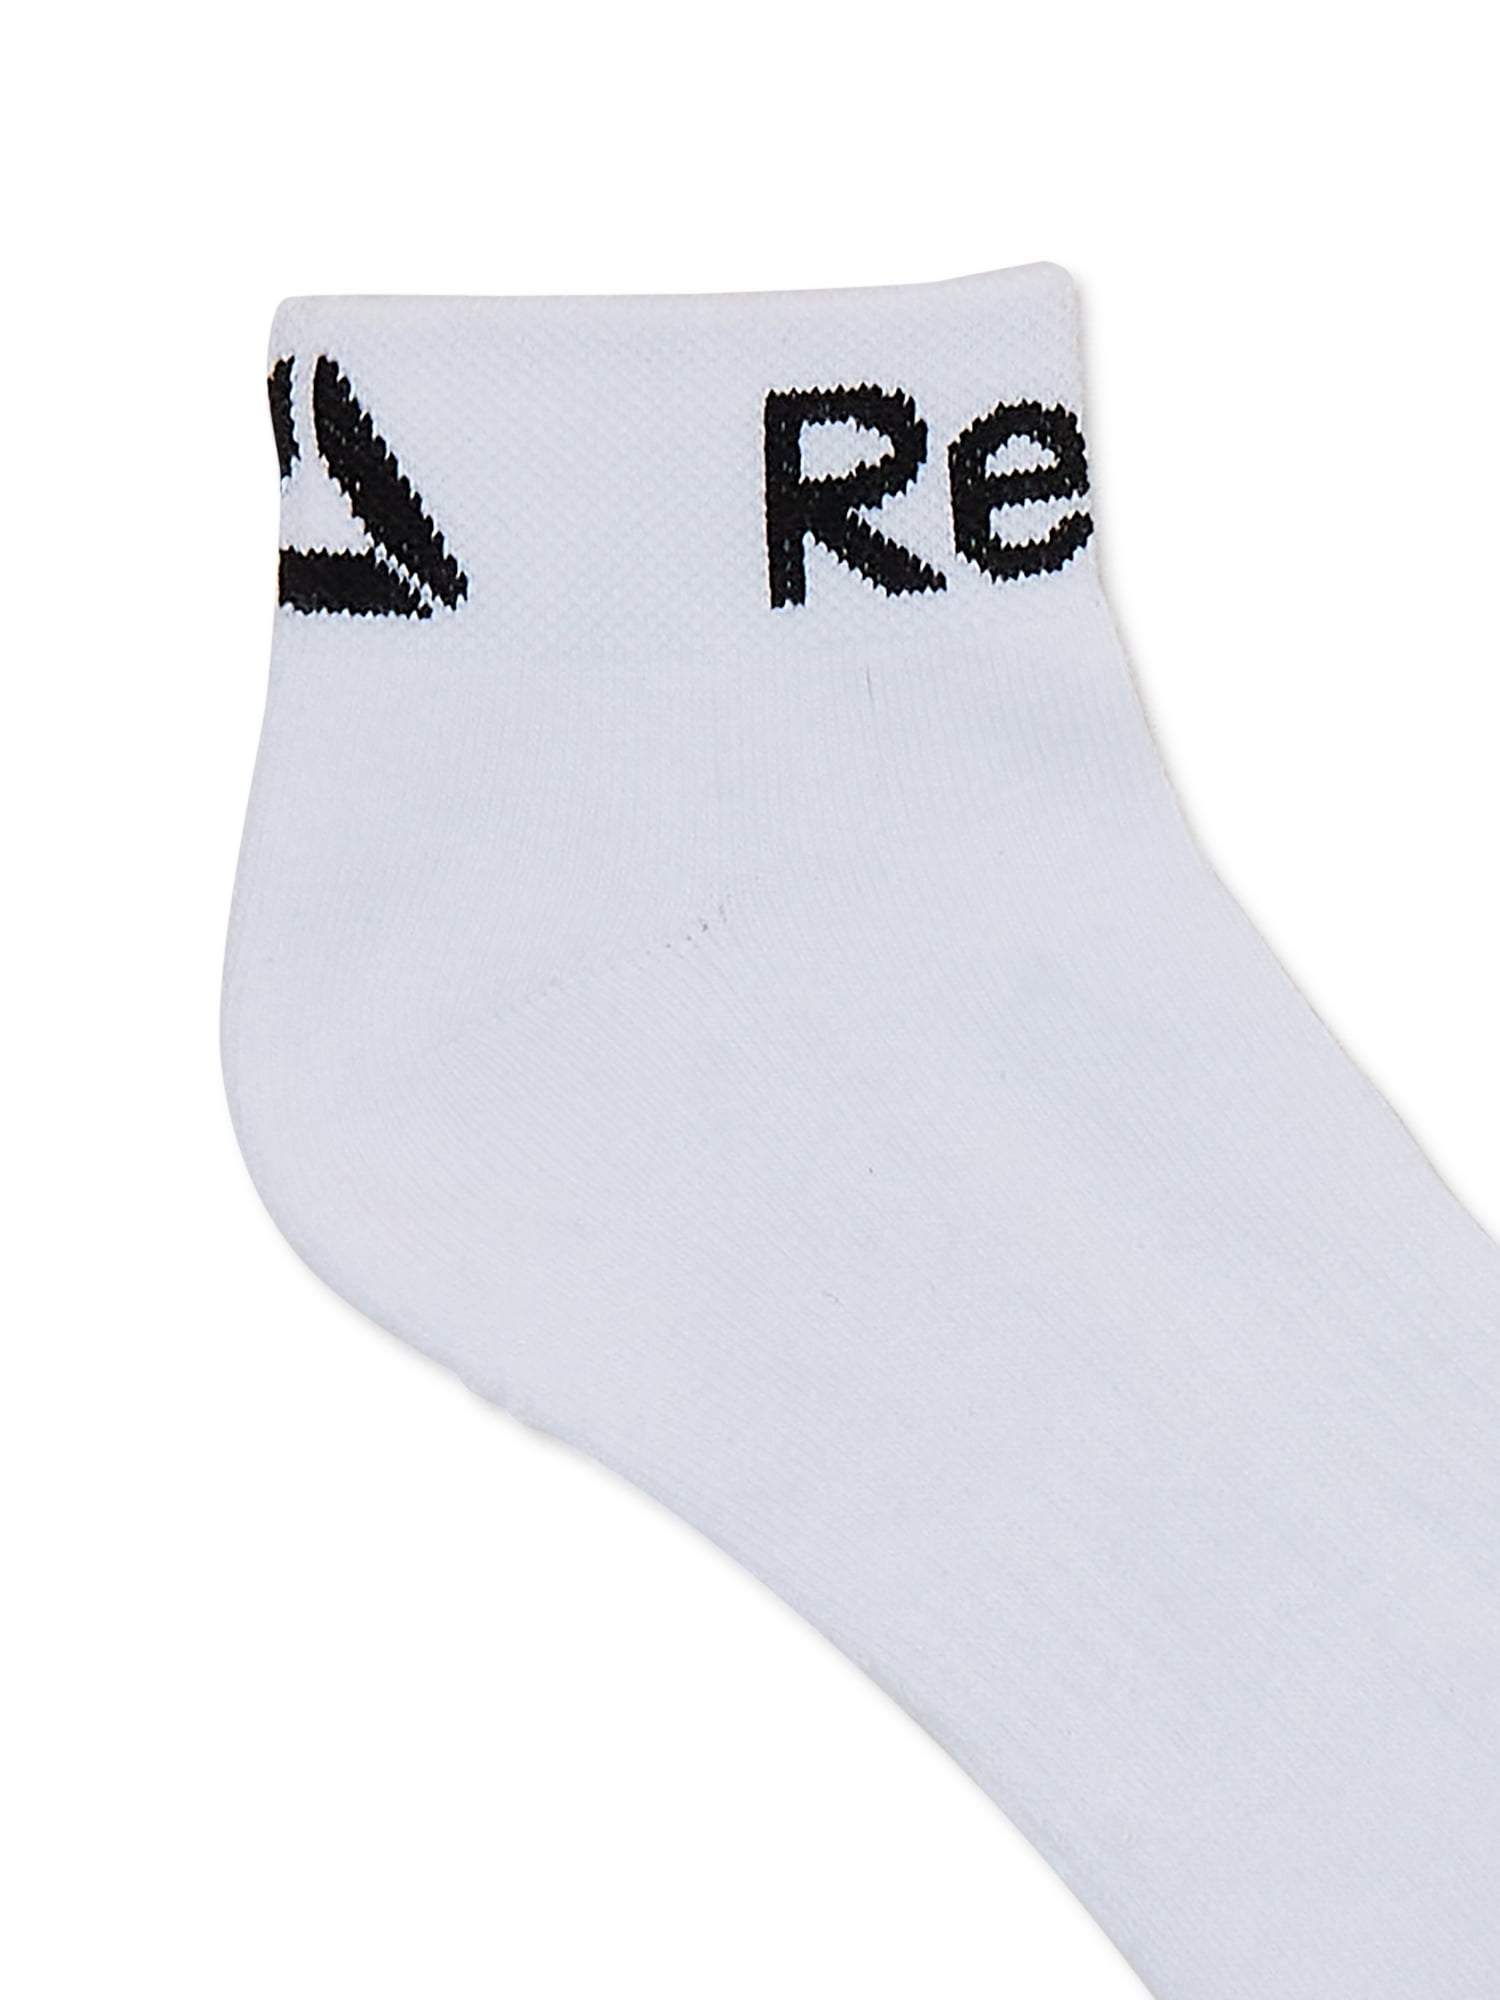 Men\'s 6-Pack Quarter Reebok Socks, Series Pro